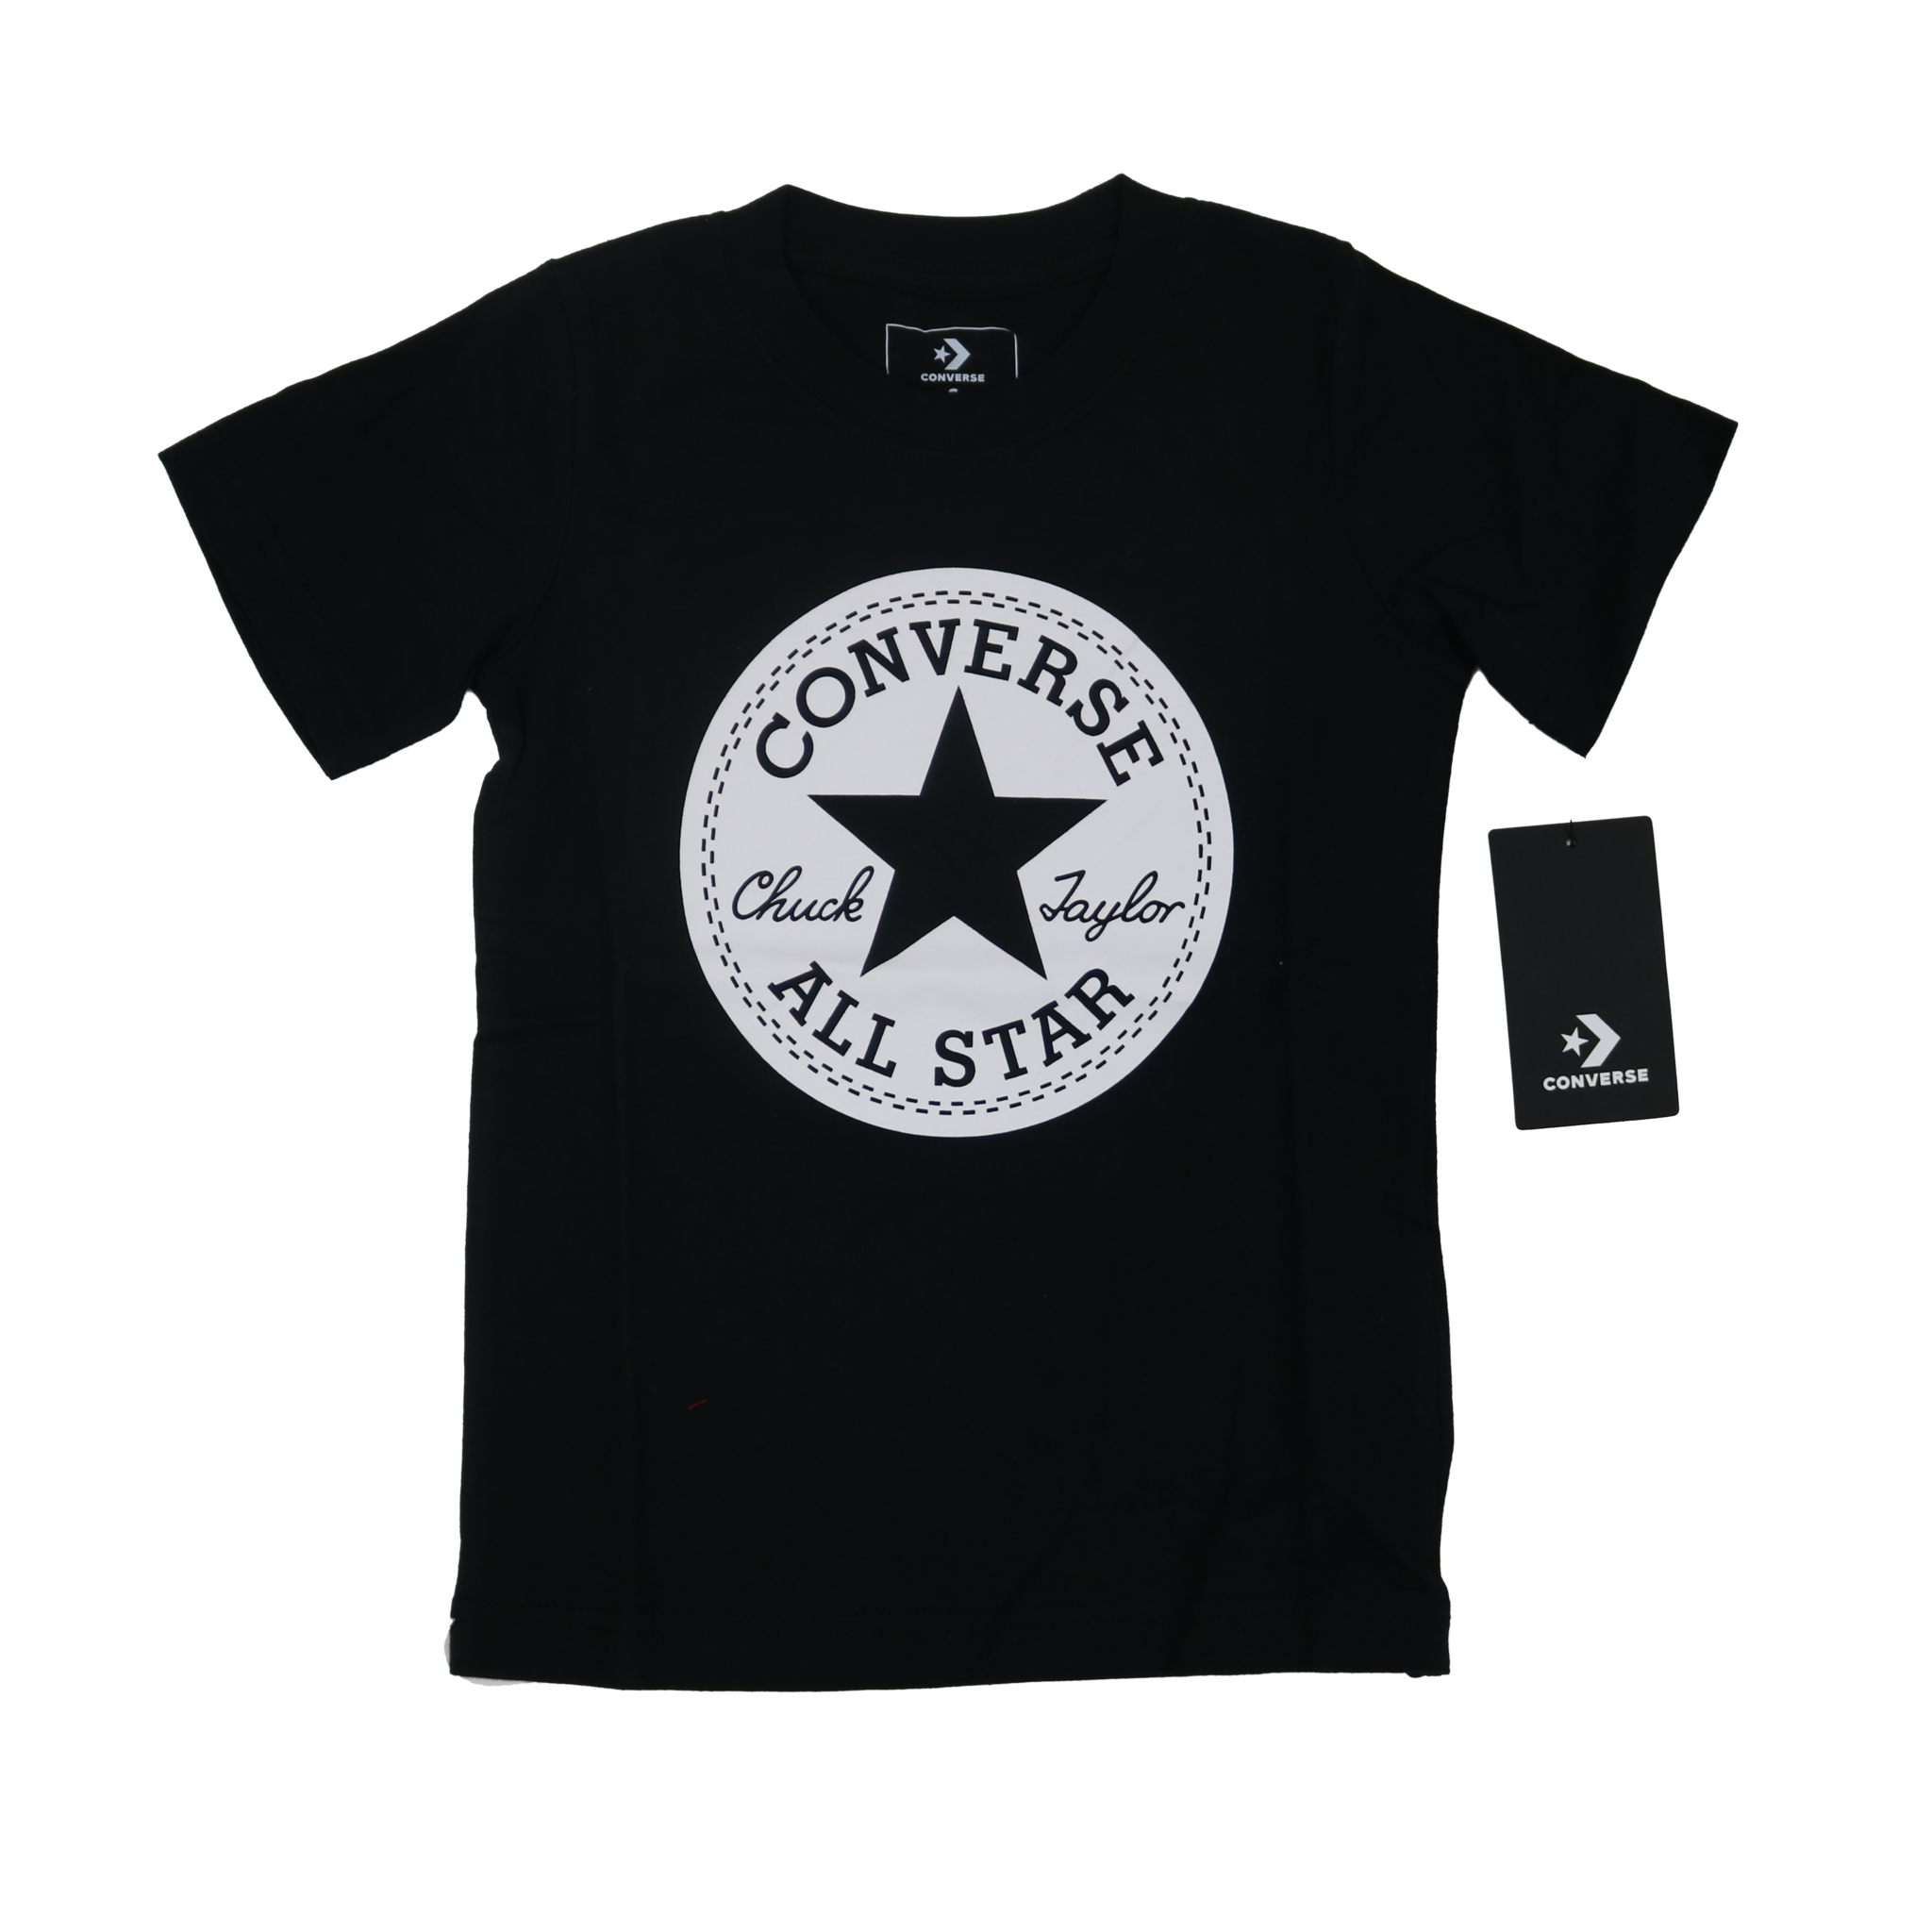 converse and shirt